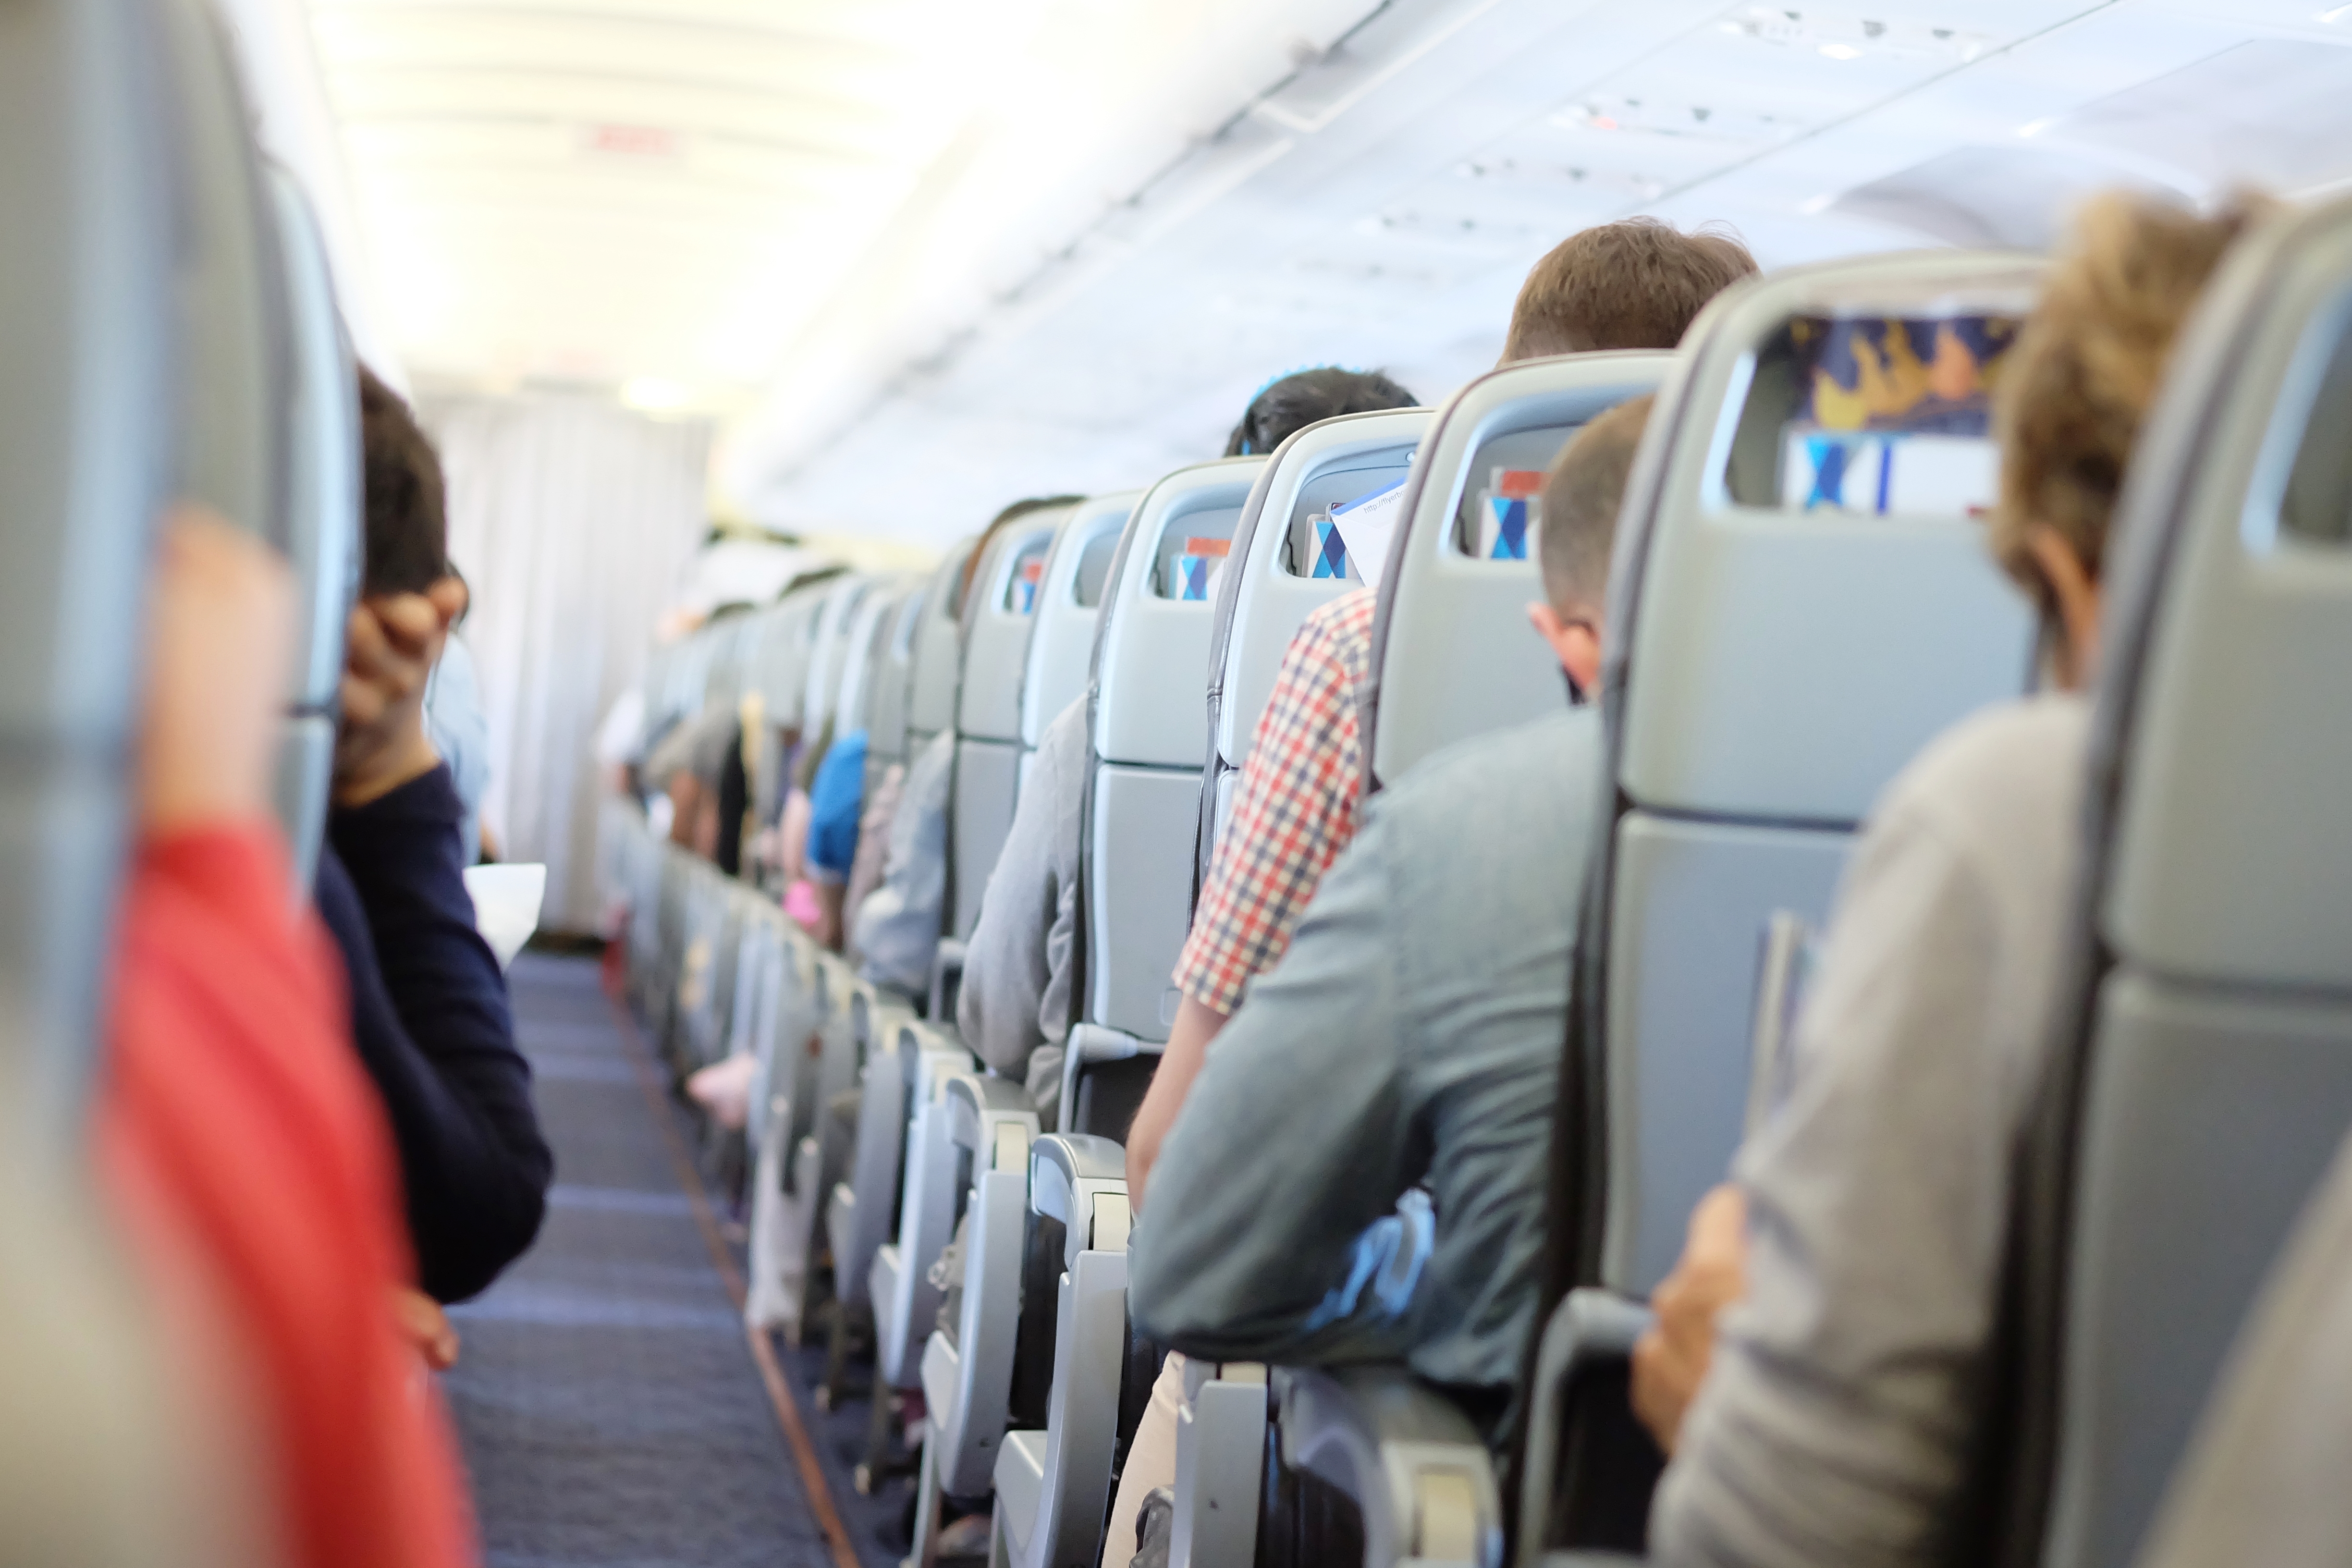 Passagers dans un avion | Source : Shutterstock